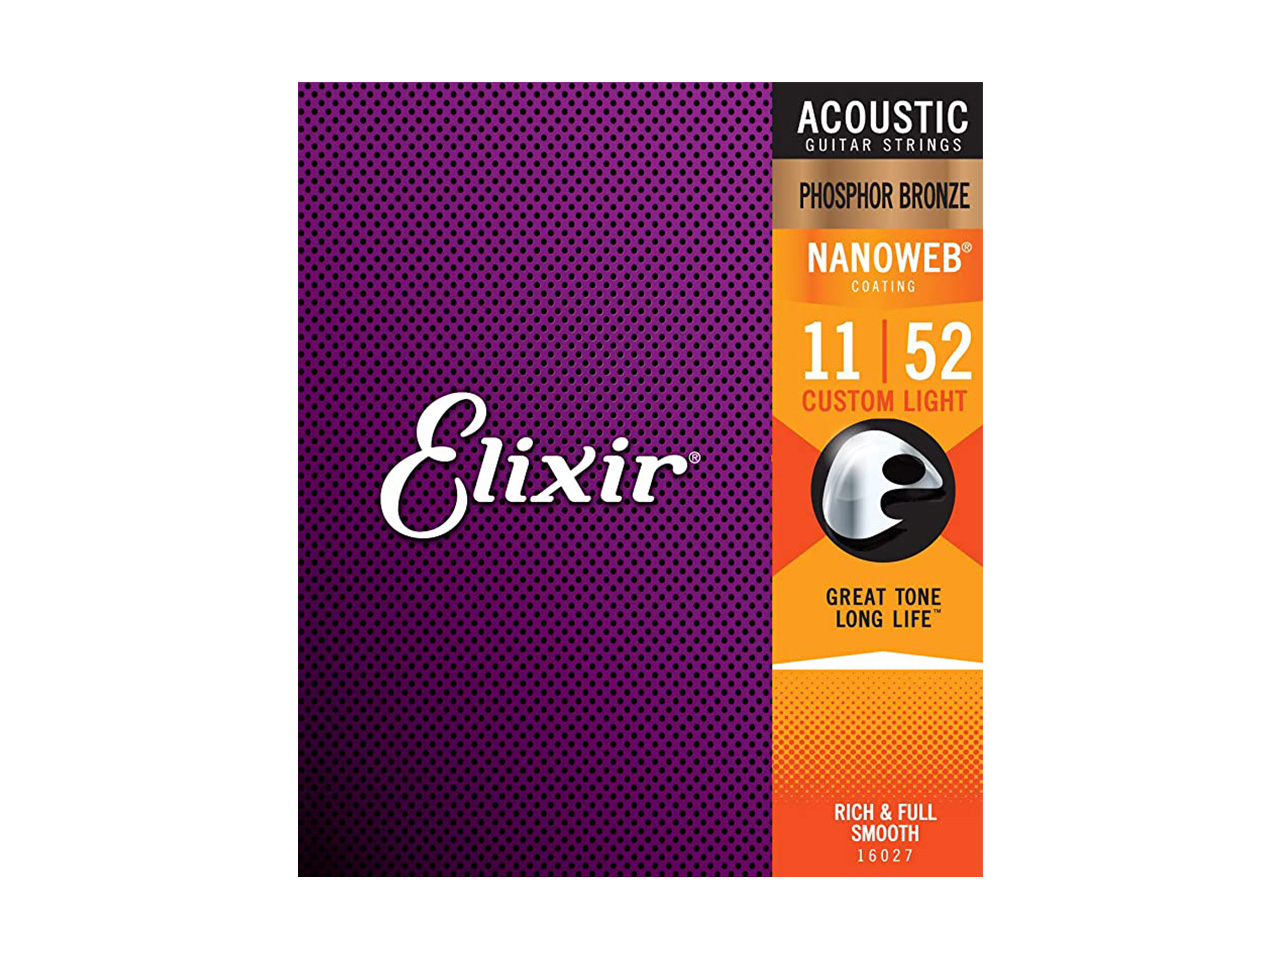 Elixir(エリクサー) Acoustic Phosphor Bronze Custom Light【16027】/ 011-052 (アコースティックギター弦)